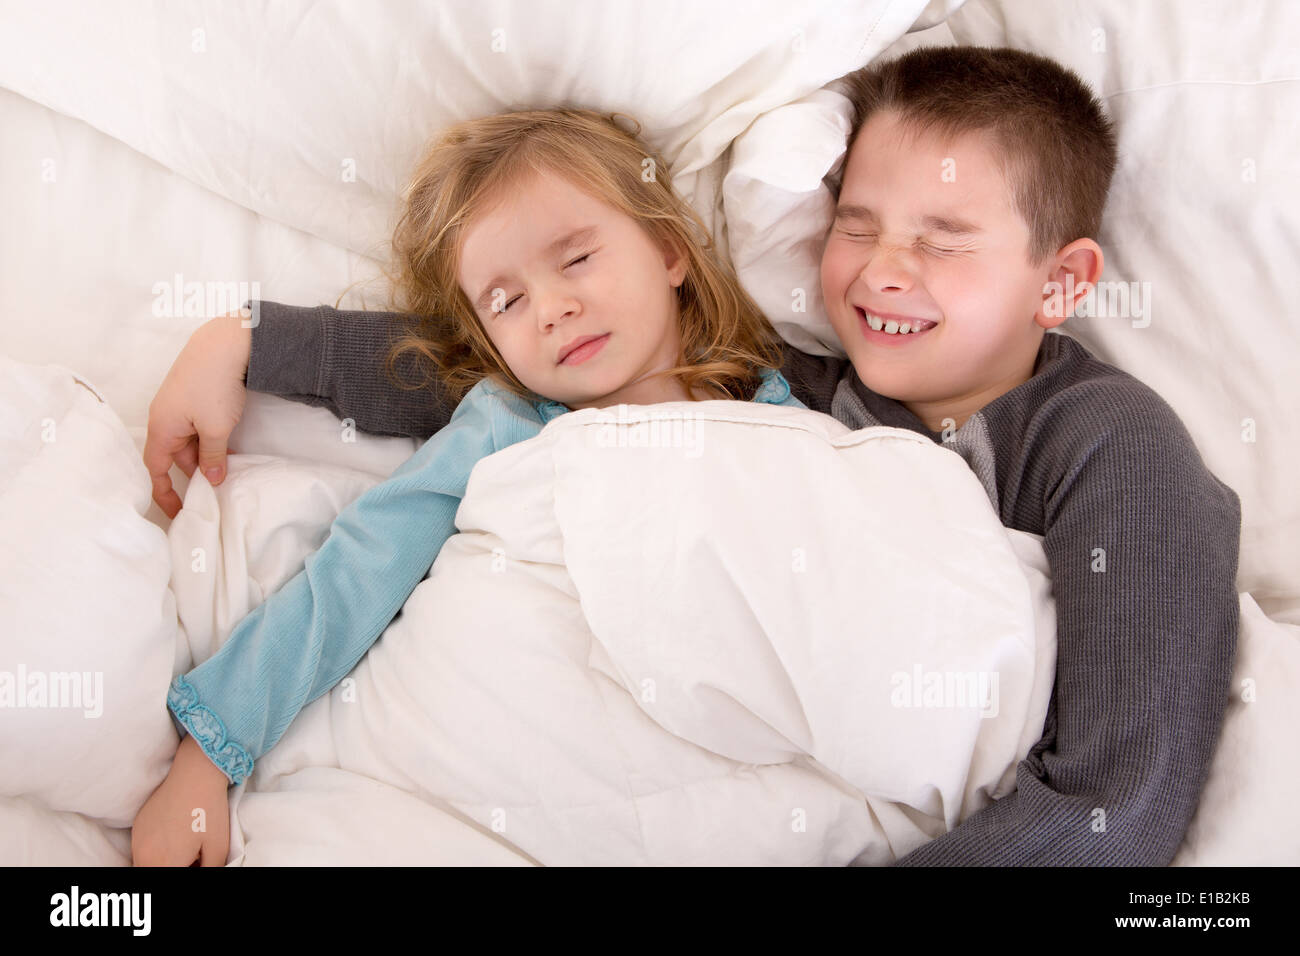 Сестра пришла брату кровать. Мальчик с девочкой в постели. Кровать для мальчика и девочки в одной.